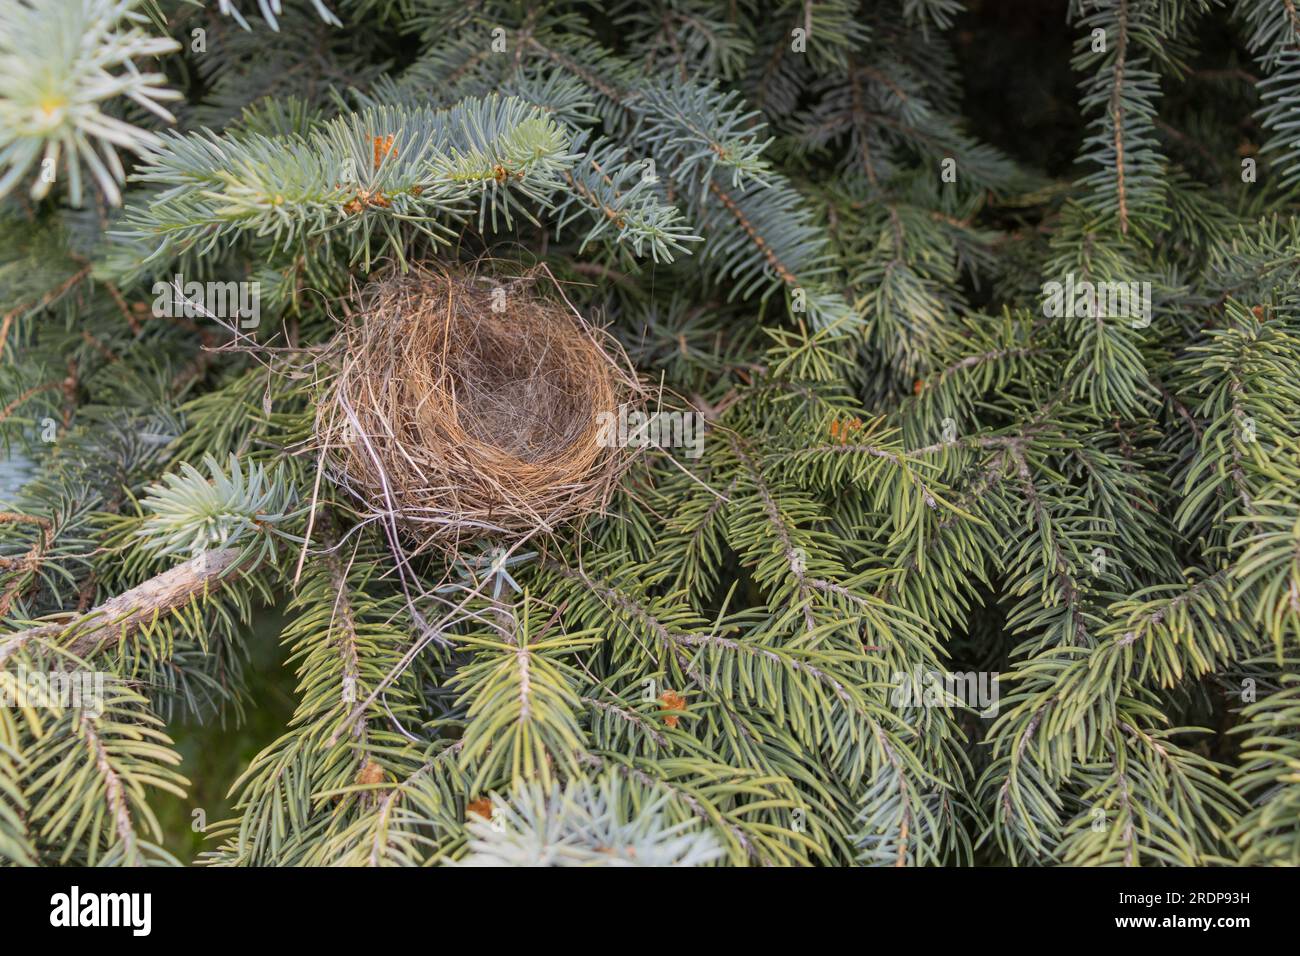 Leeres Vogelnest in Nadelbäumen - Nahaufnahme von trockenen Zweigen und Gräsern - keine Eier oder Babyvögel - grüne Nadeln im Hintergrund - von oben aufgenommen Stockfoto